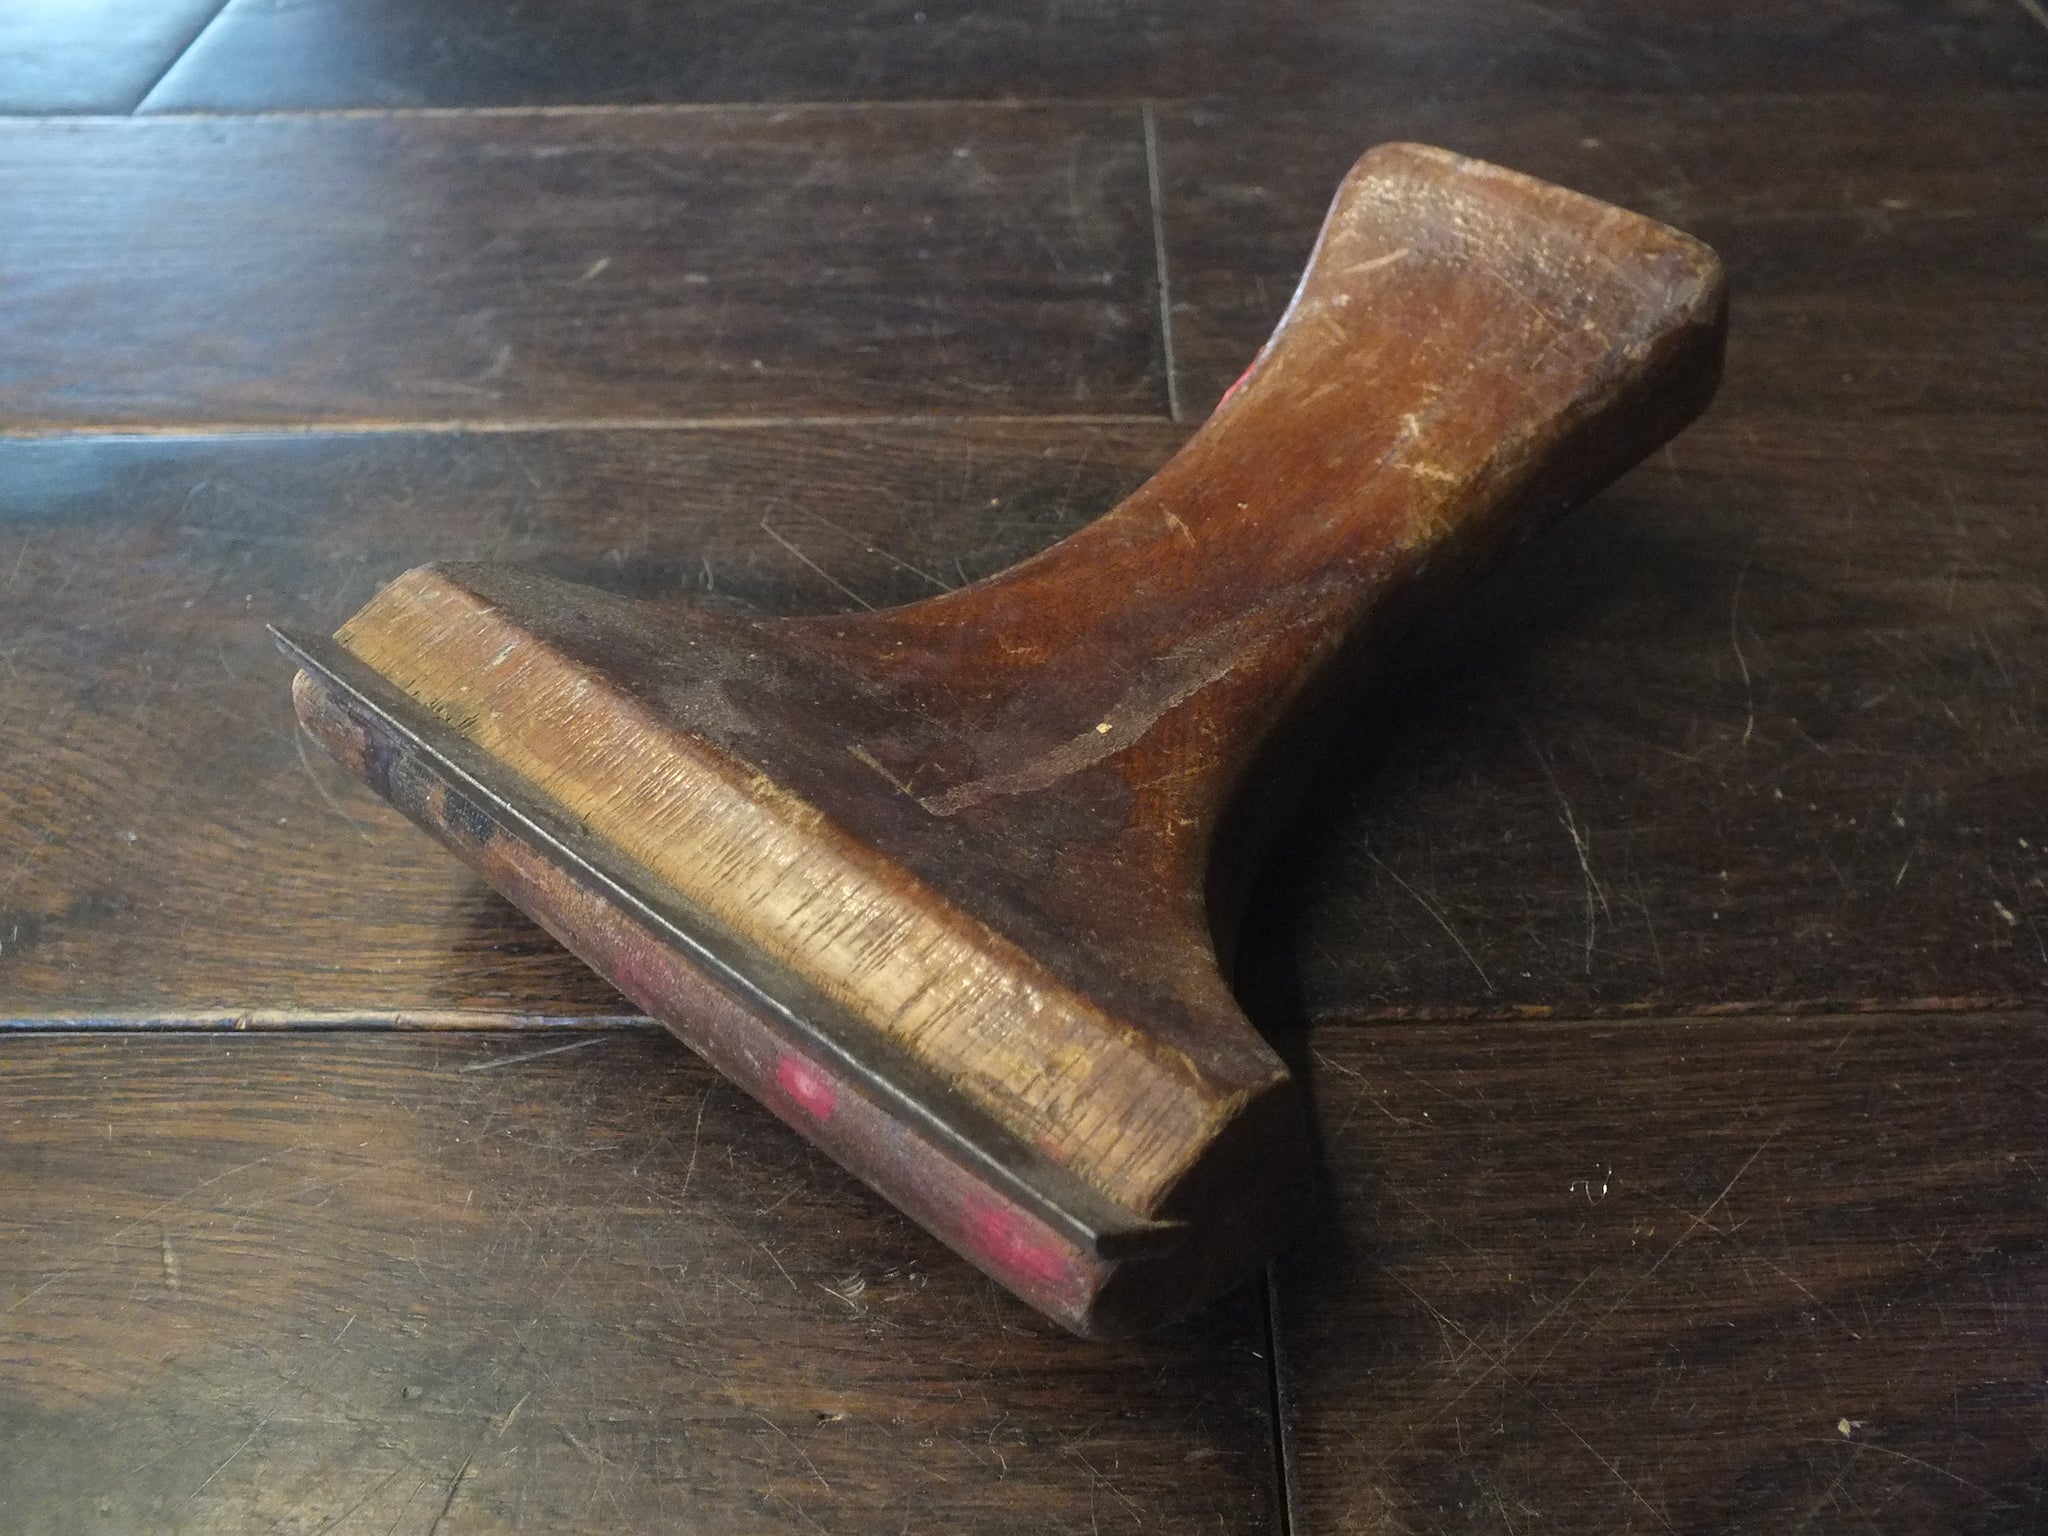 Scraper. Wooden handle. Needs sharpening. 46381